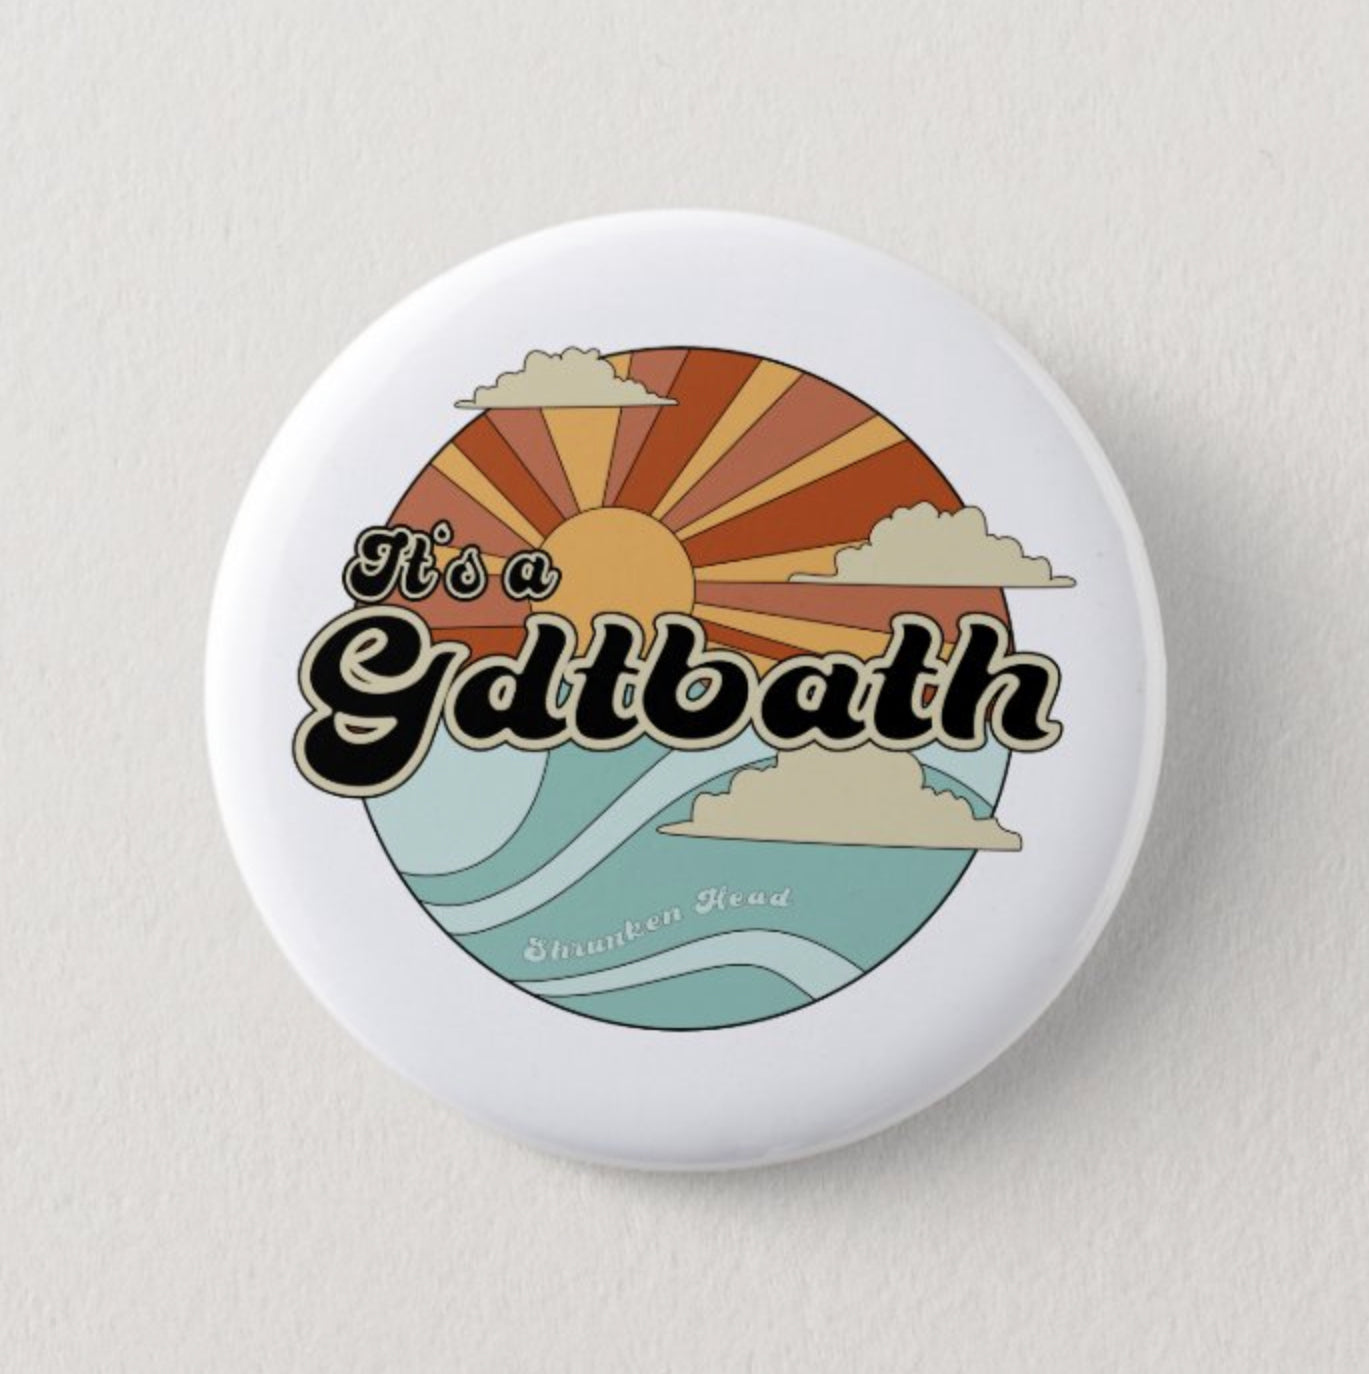 GDTBATH Sunset Button Pin by Shrunken Head Brand